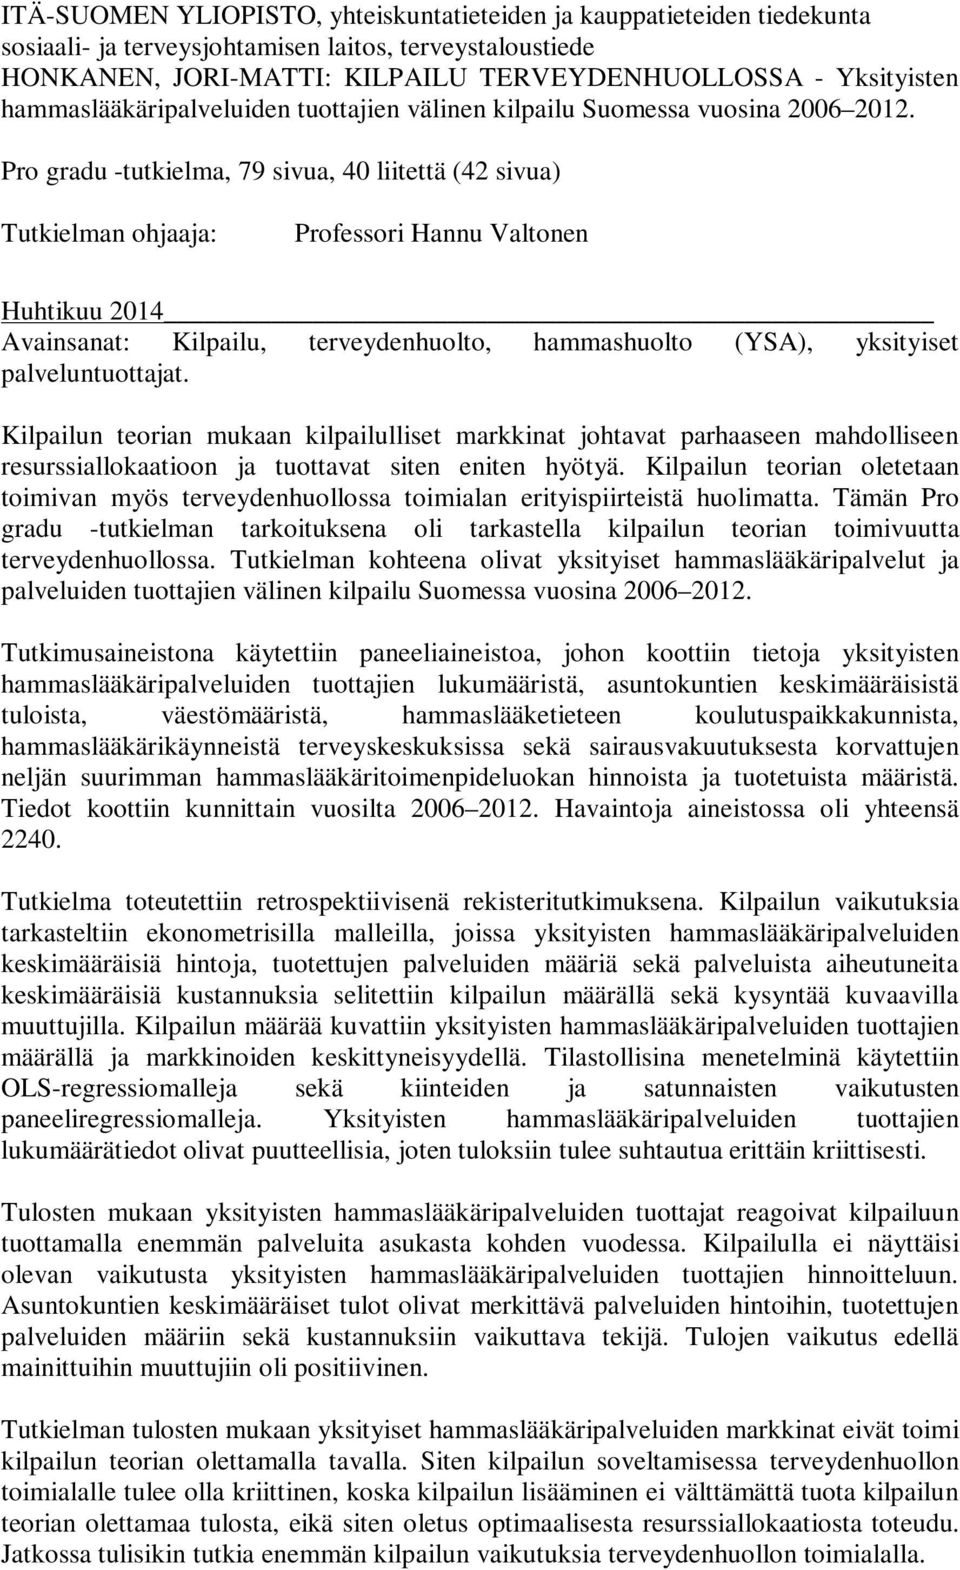 Pro gradu -tutkielma, 79 sivua, 40 liitettä (42 sivua) Tutkielman ohjaaja: Professori Hannu Valtonen Huhtikuu 2014 Avainsanat: Kilpailu, terveydenhuolto, hammashuolto (YSA), yksityiset